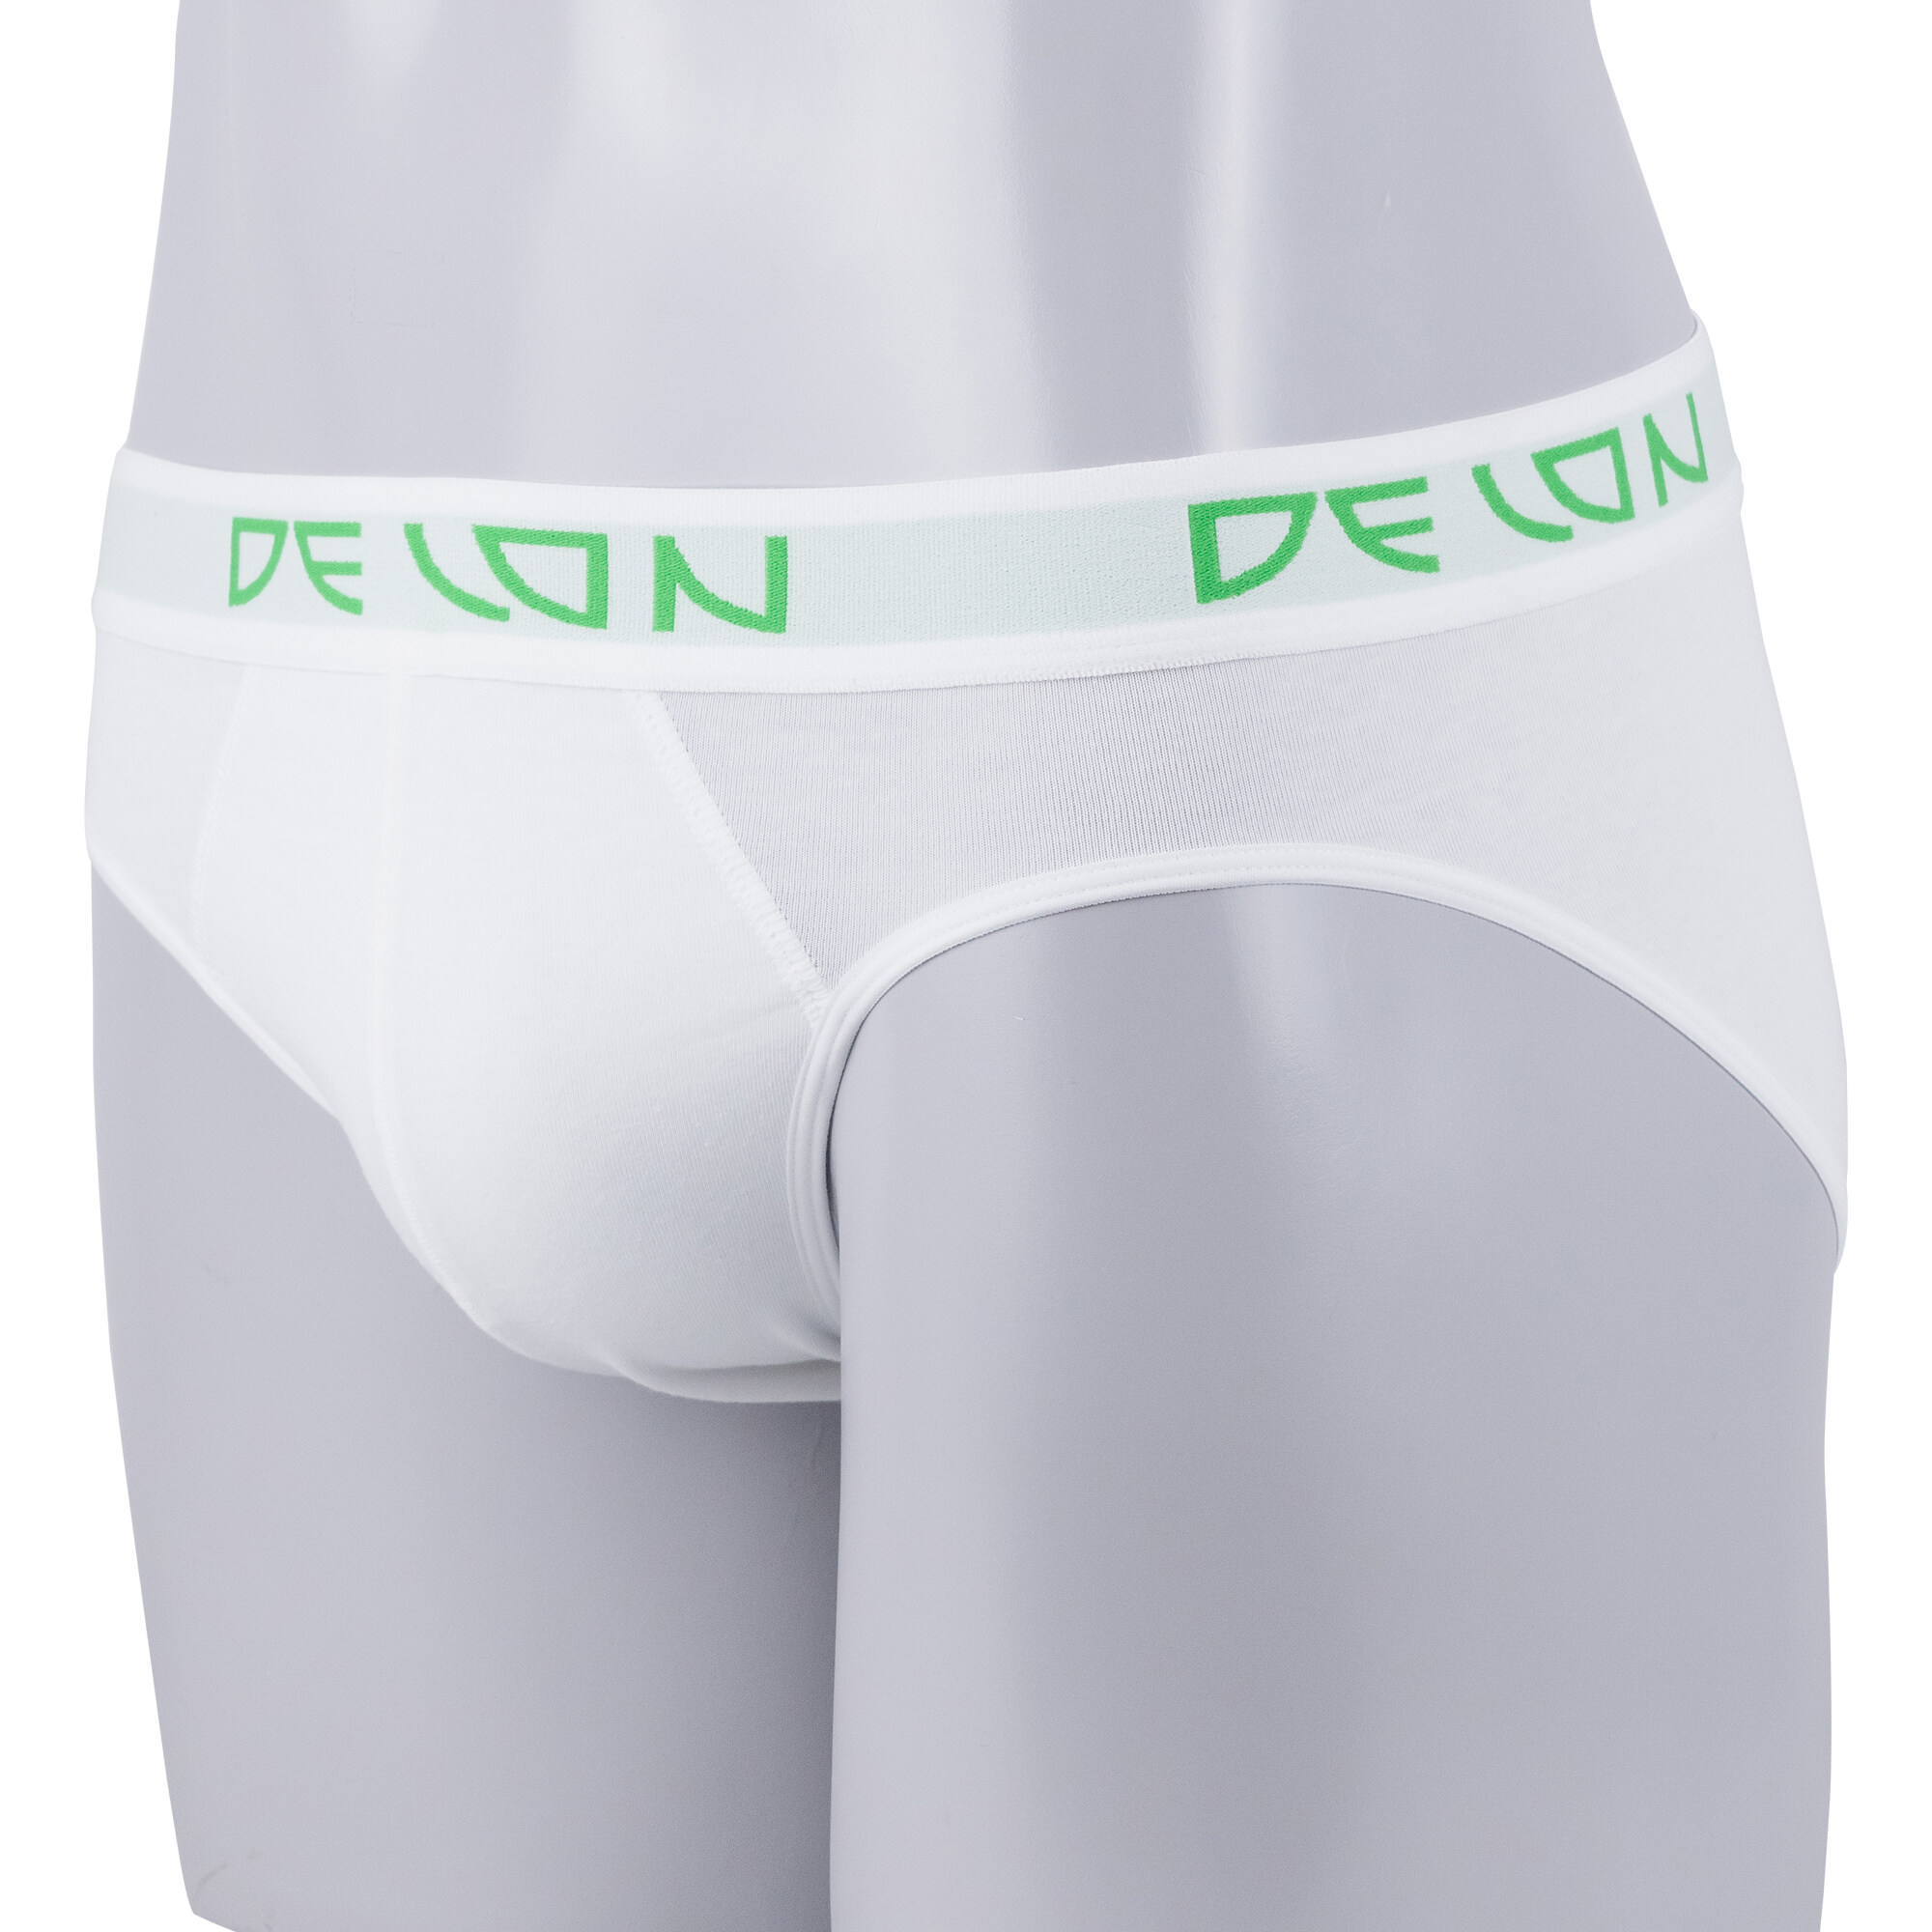 DELON **กางเกงใน ตัว Top ขายดี (1ตัว)ชุดชั้นในชาย บิกินนี่  AU53001  ผ้าคอตตอน Super soft เสื้อผ้า แฟชั่น ผช